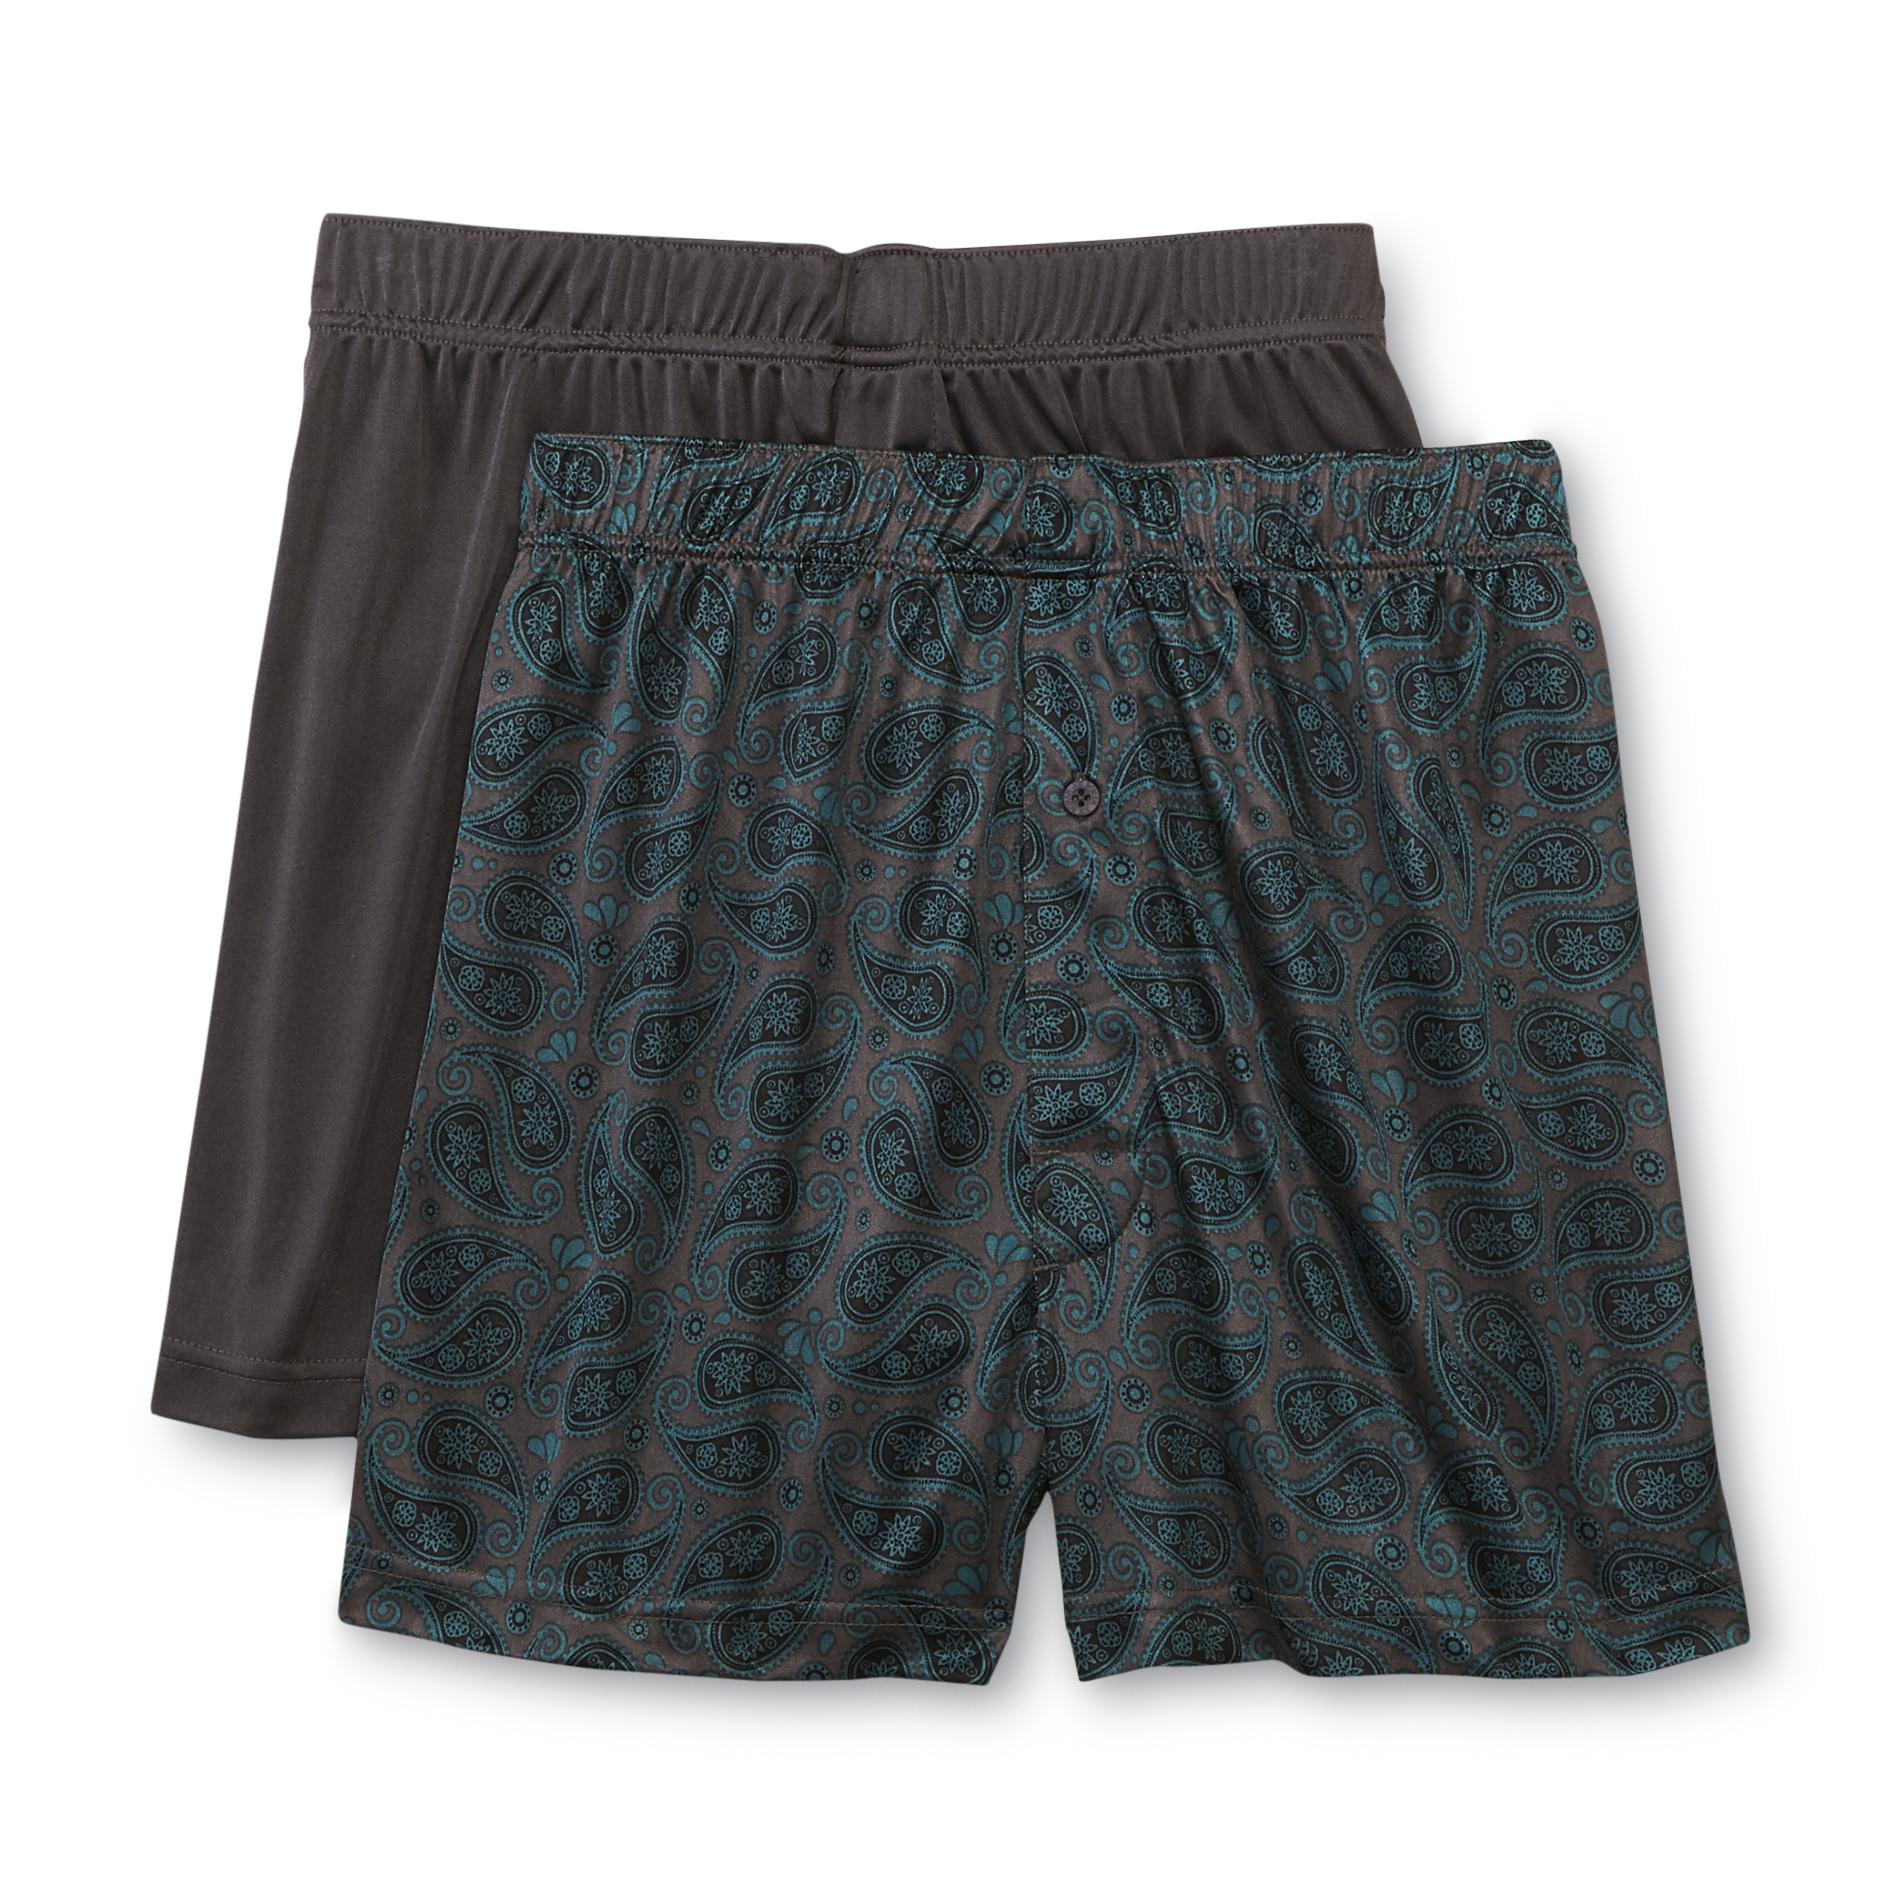 Joe Boxer Men's 2-Pack Tricot Knit Boxer Shorts | Shop Your Way: Online ...